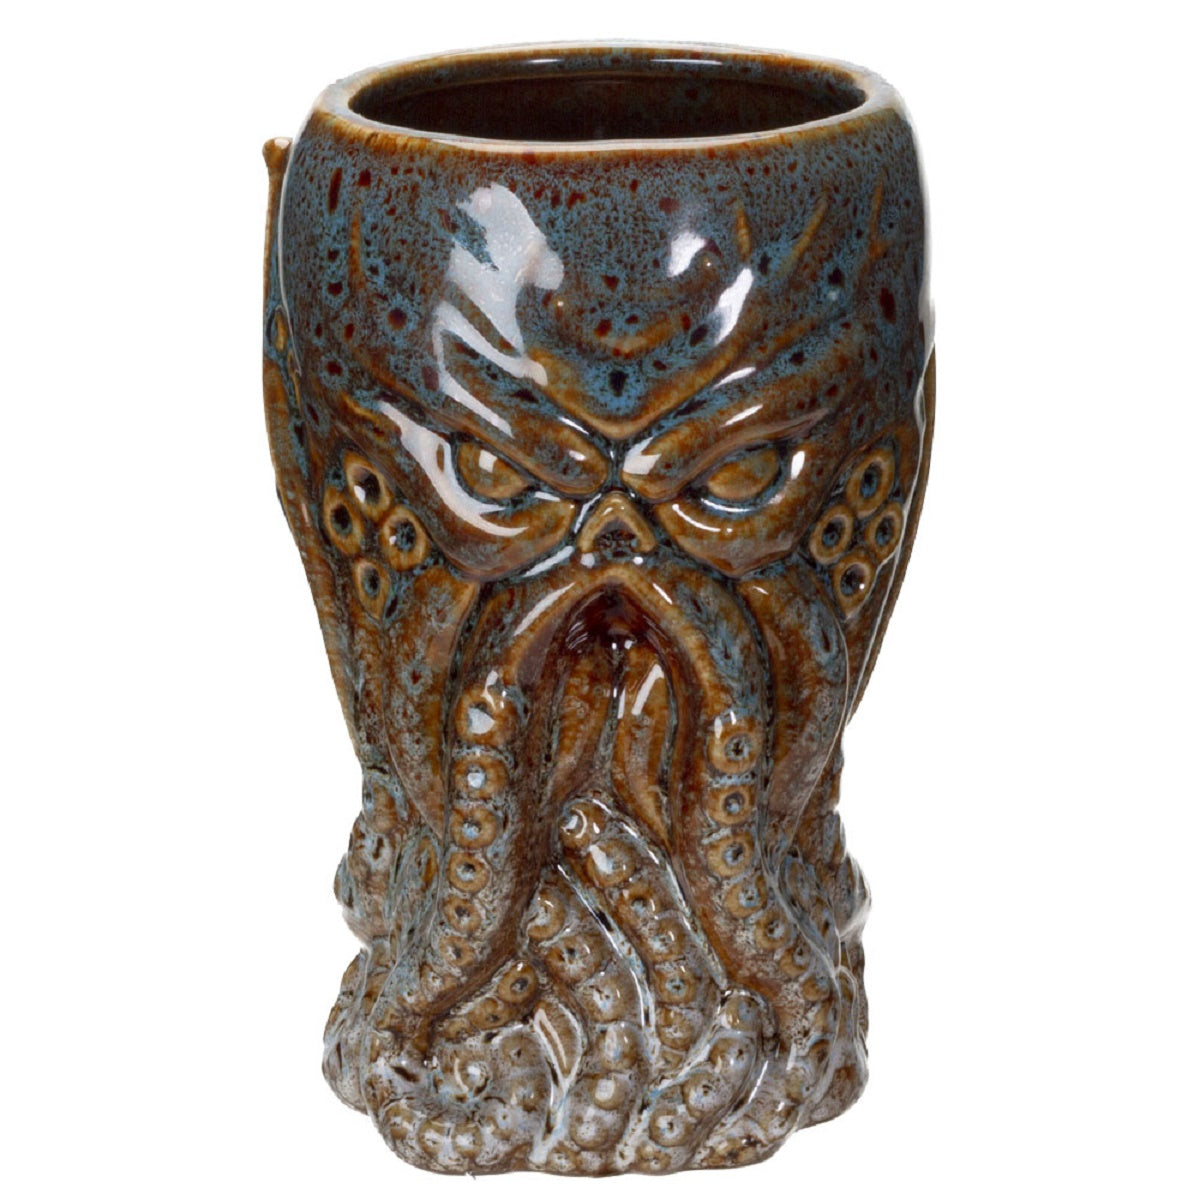 Nautical Under the Sea Octopus Cthulhu Ceramic Mug - 16 oz